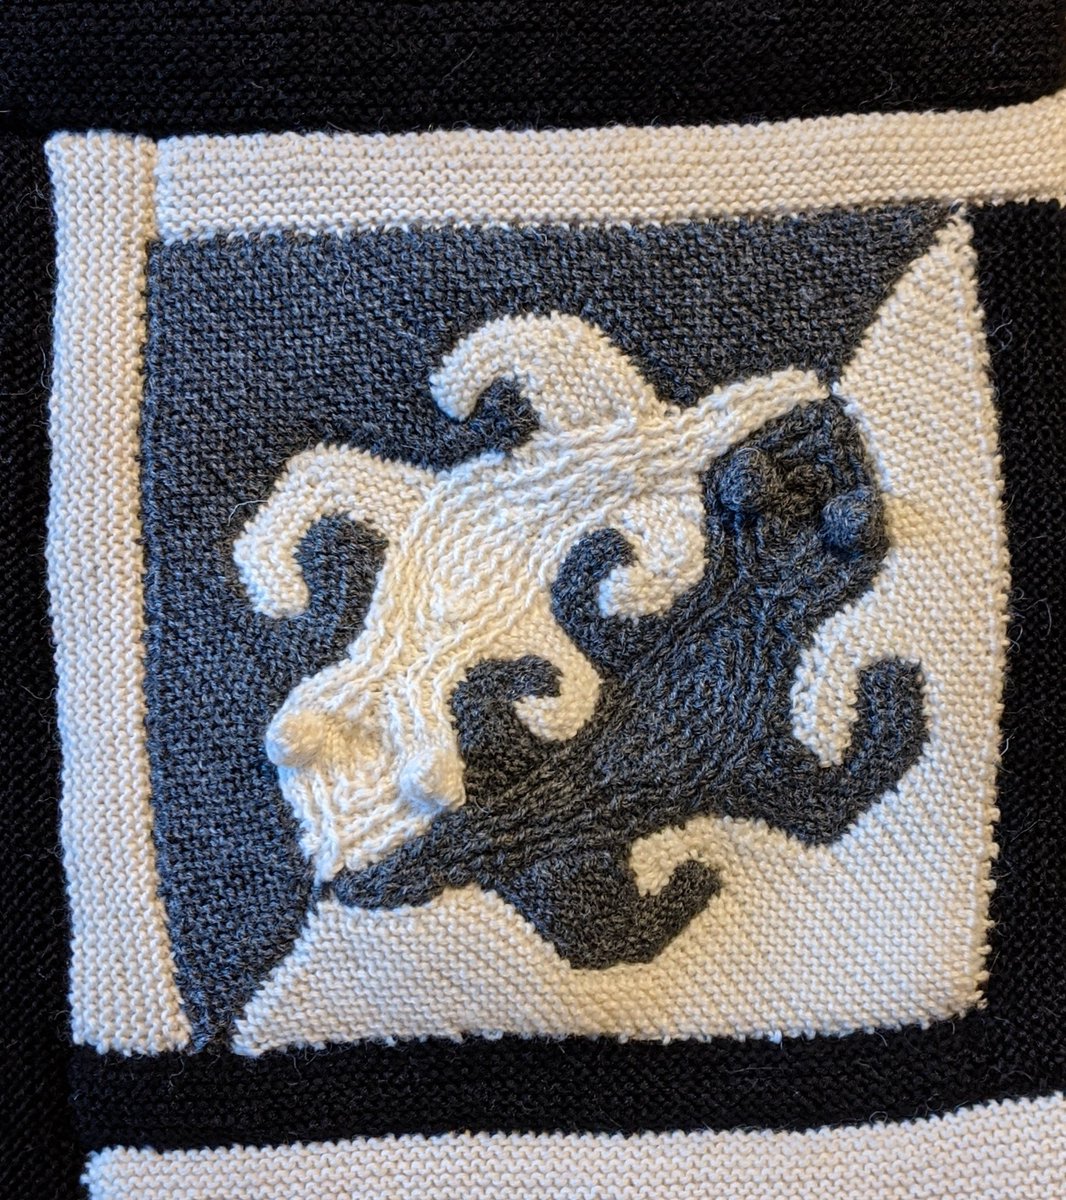 Escher inspired pillow
Knitted 2019
#knitting #knittingtwitter #knittedtoys #knittingtoys #knittoys